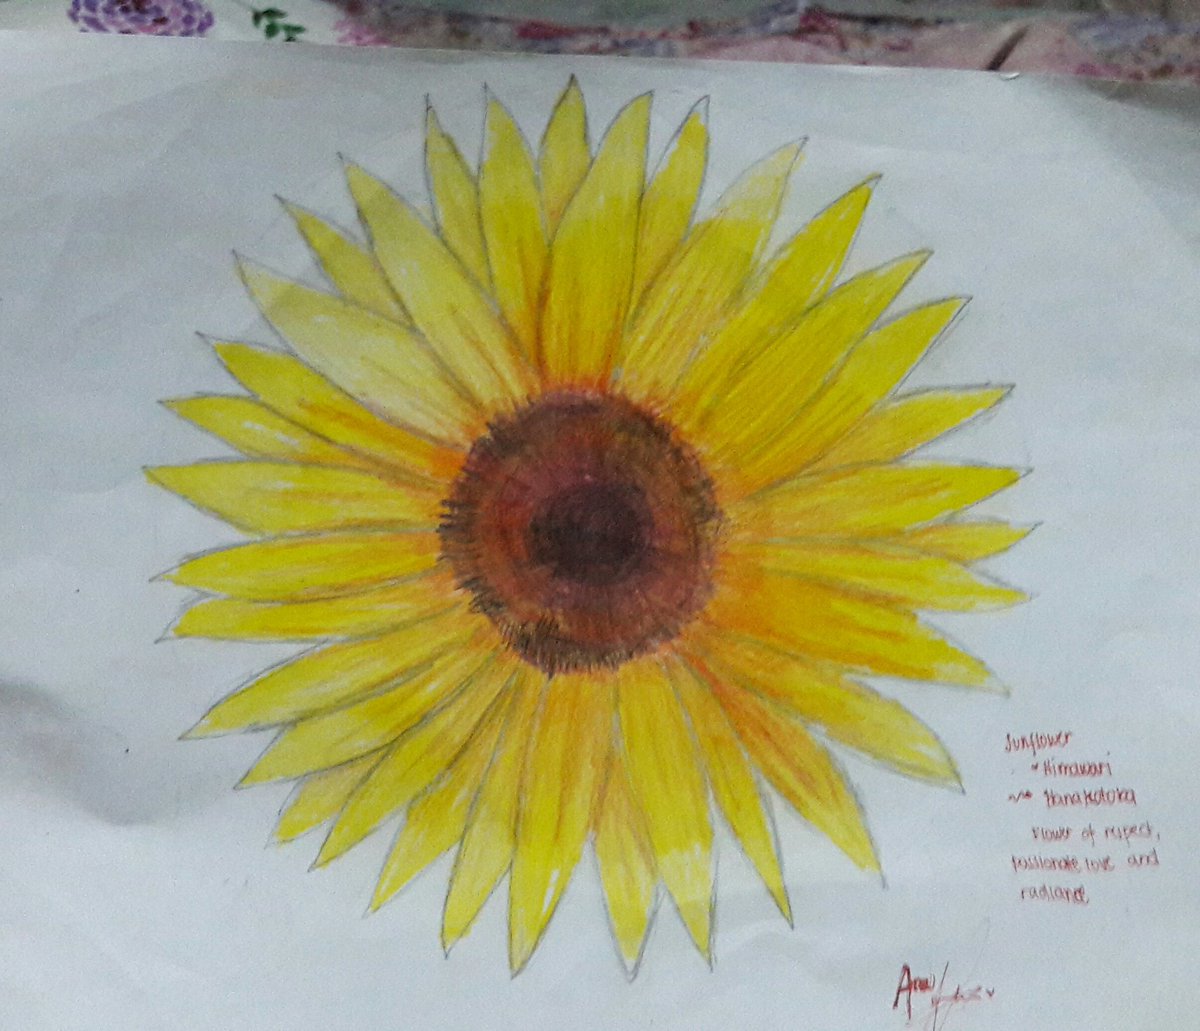 Hanakotoba:
Sunflower / Himawari
Respect, Passionate Love and Radiance
#Hanakotoba #MeaningOfFlowers